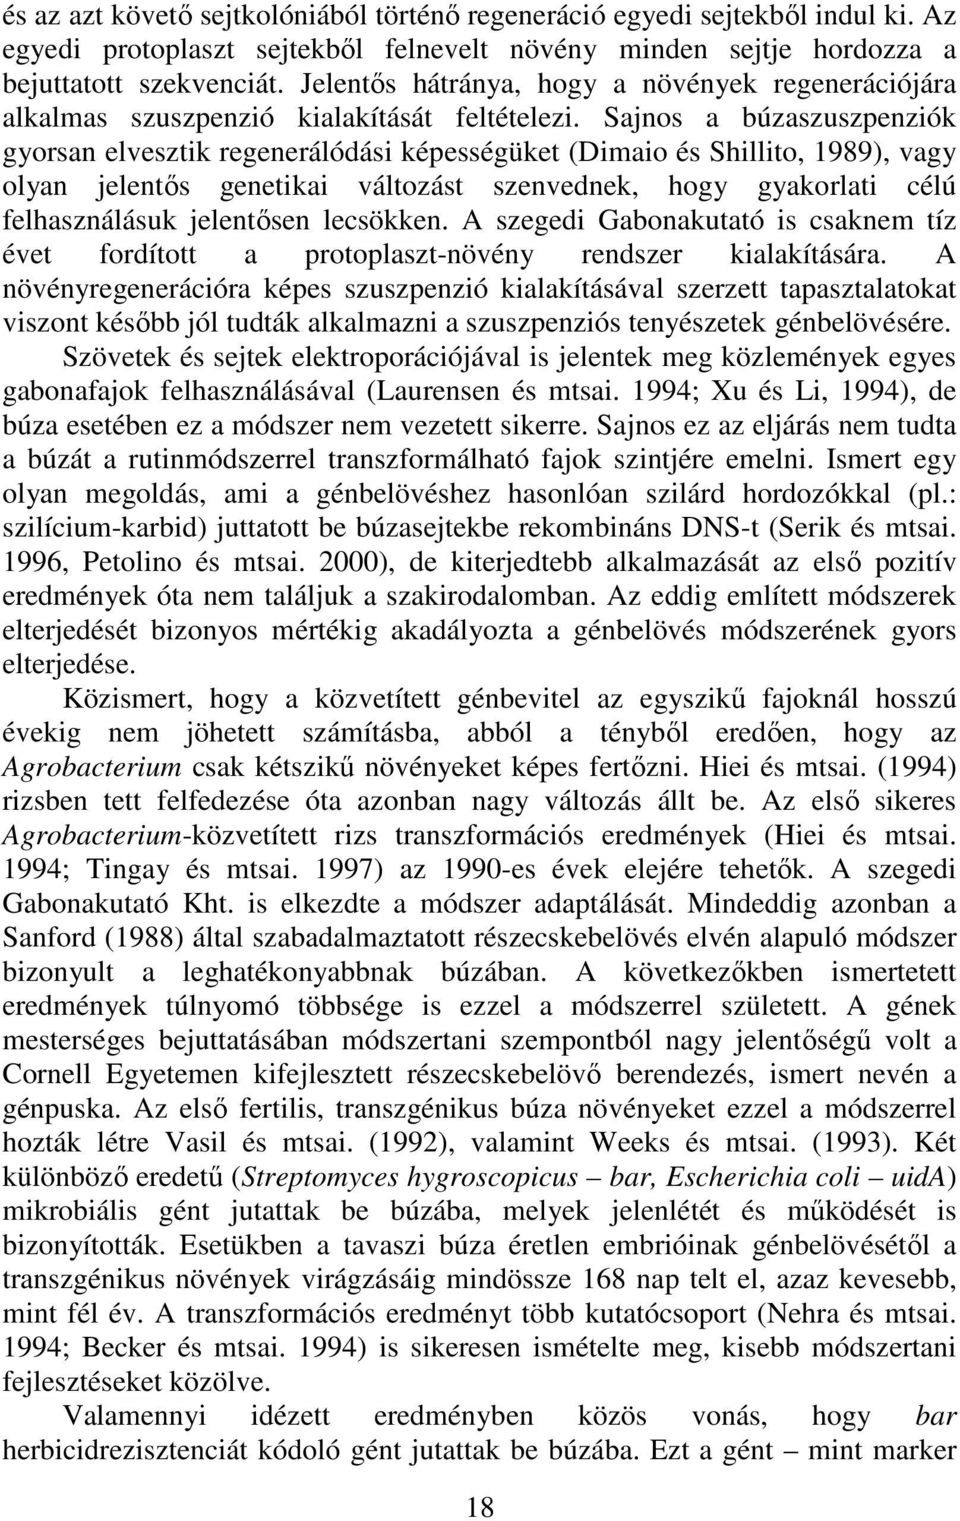 Sajnos a búzaszuszpenziók gyorsan elvesztik regenerálódási képességüket (Dimaio és Shillito, 1989), vagy olyan jelentıs genetikai változást szenvednek, hogy gyakorlati célú felhasználásuk jelentısen